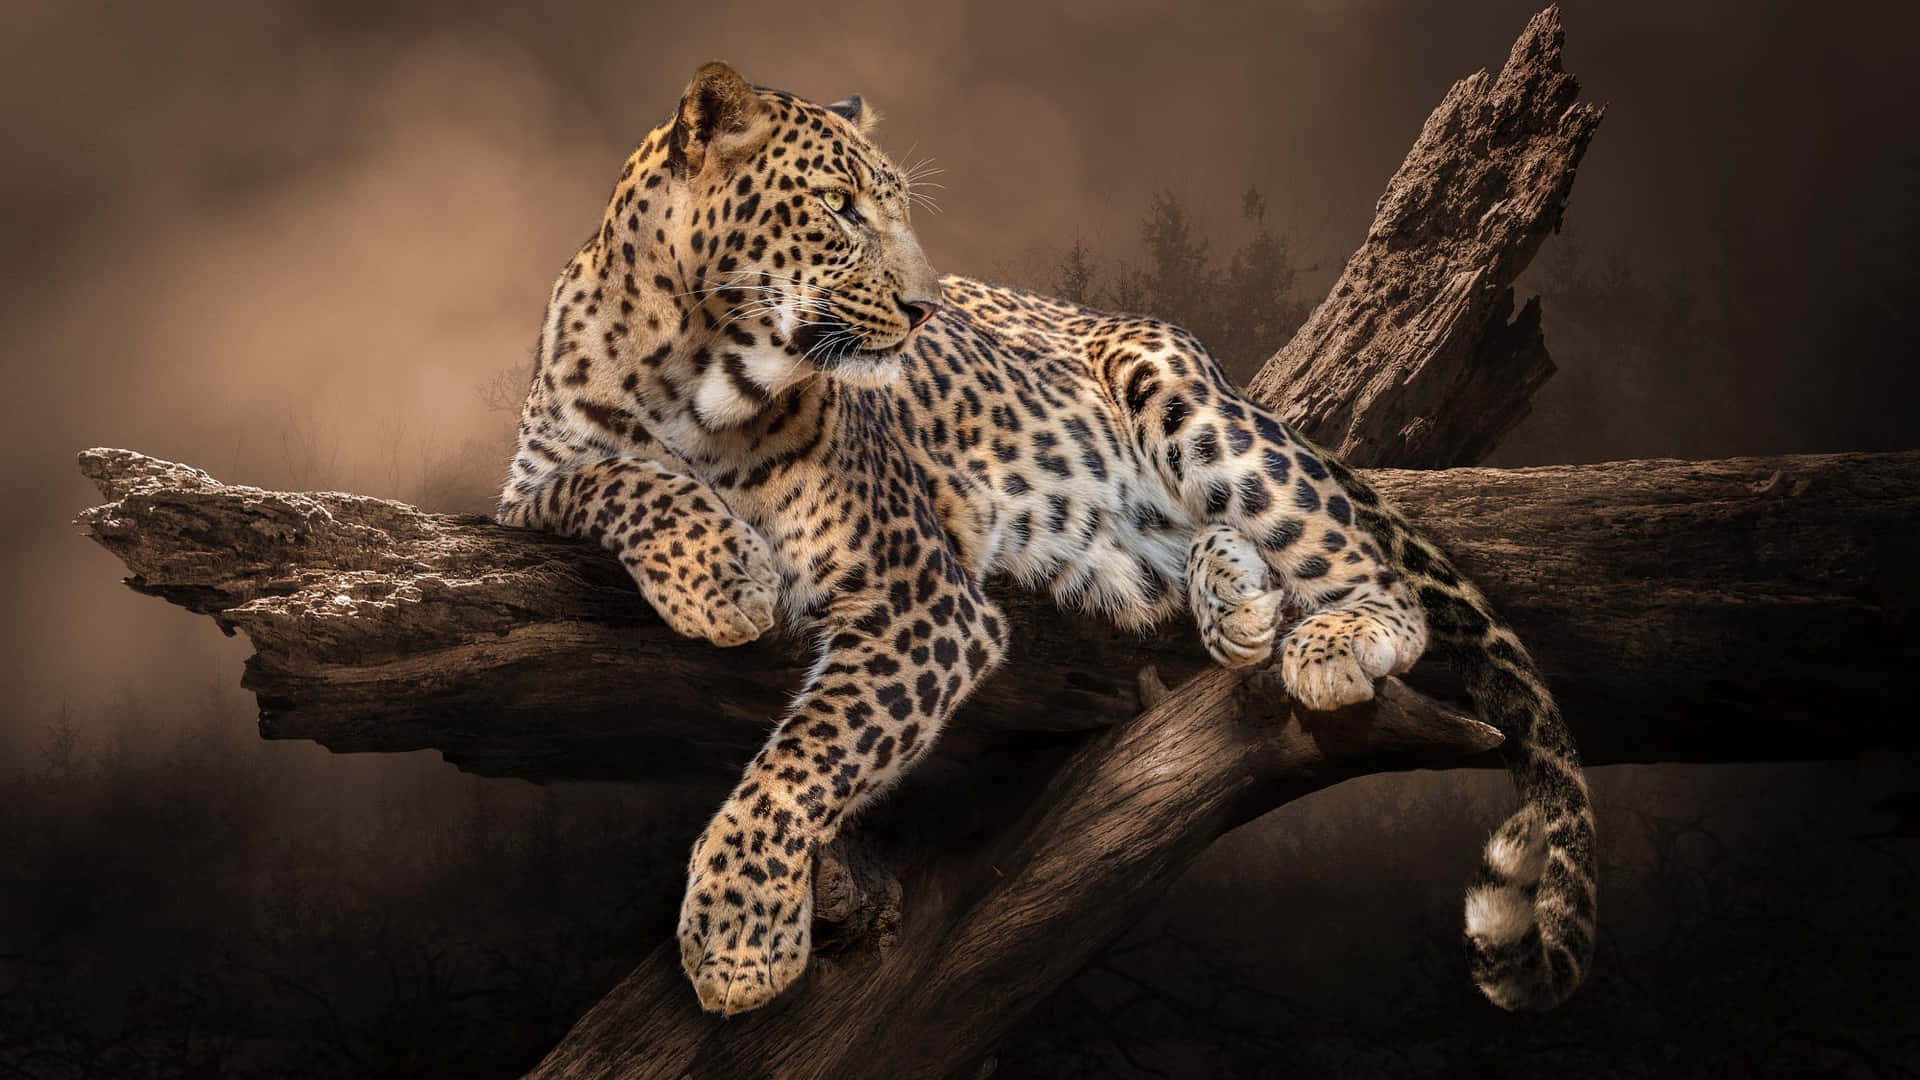 Etnærbillede Af En Prægtig Leopard I Dens Fantastiske Naturlige Habitat.